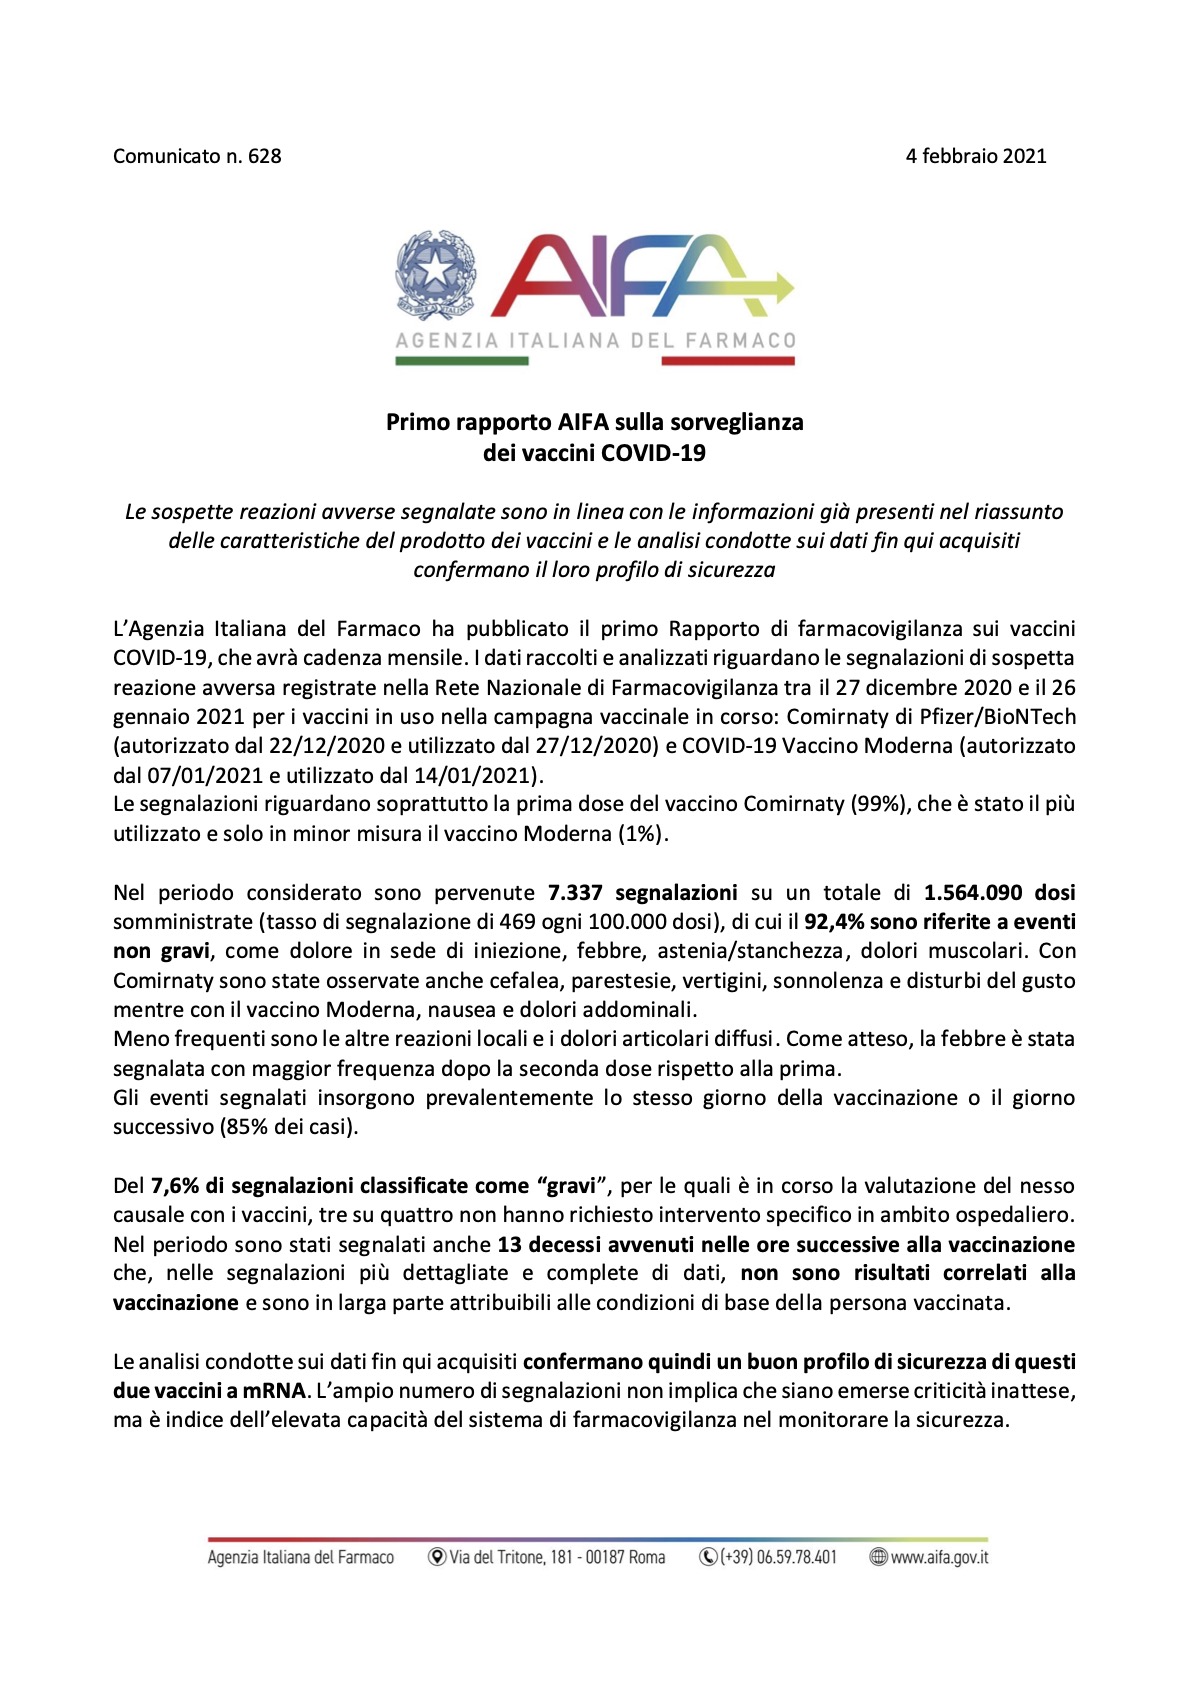 Aifa: נתונים ראשונים על תופעות לוואי של חיסונים מסוג covid-19